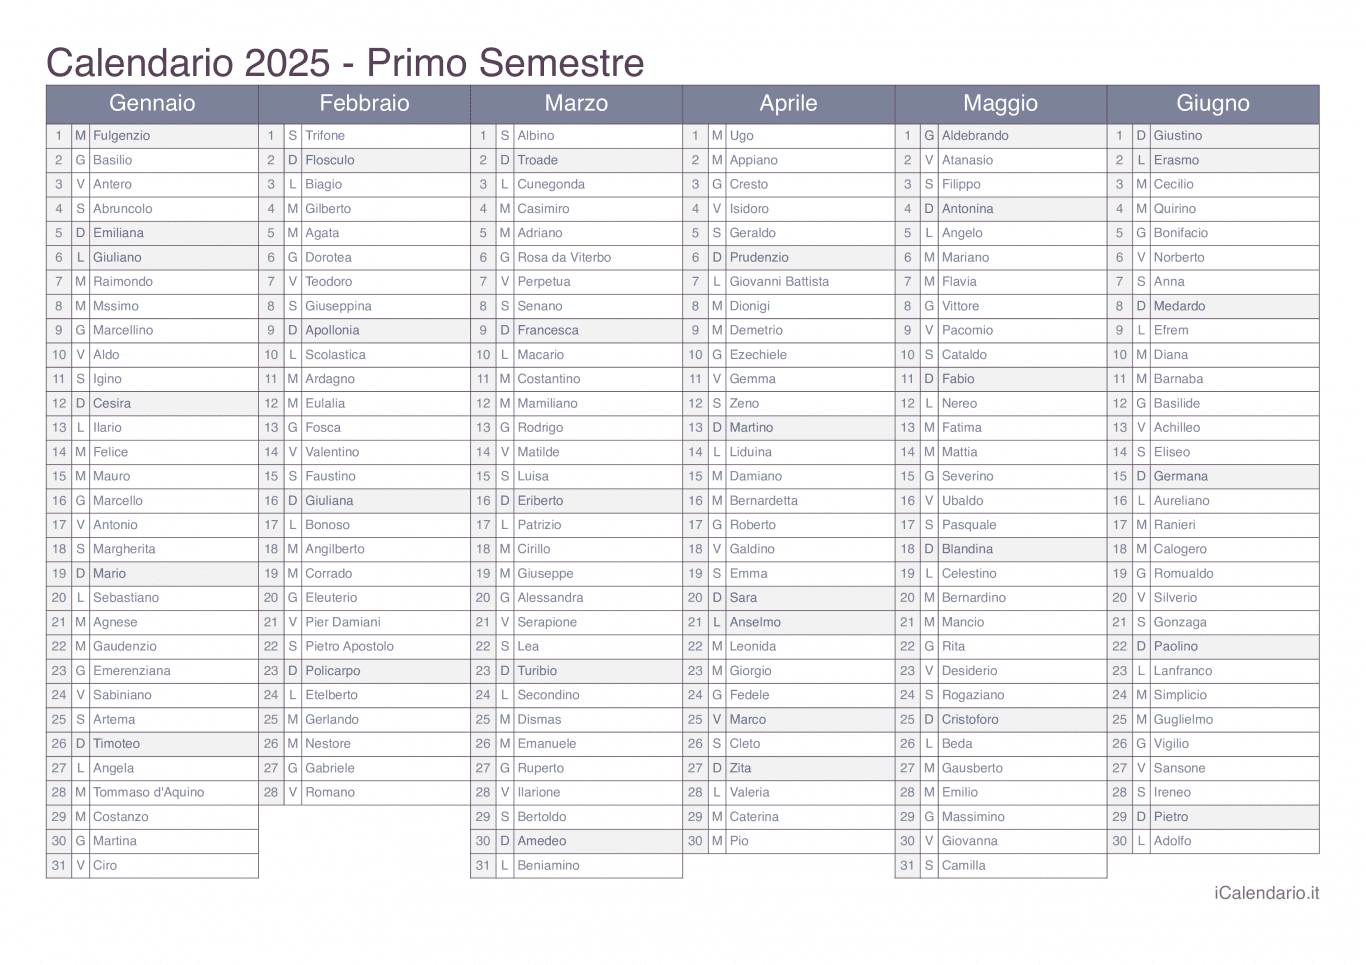 Calendario semestrale 2025 con santi e festivi - Office